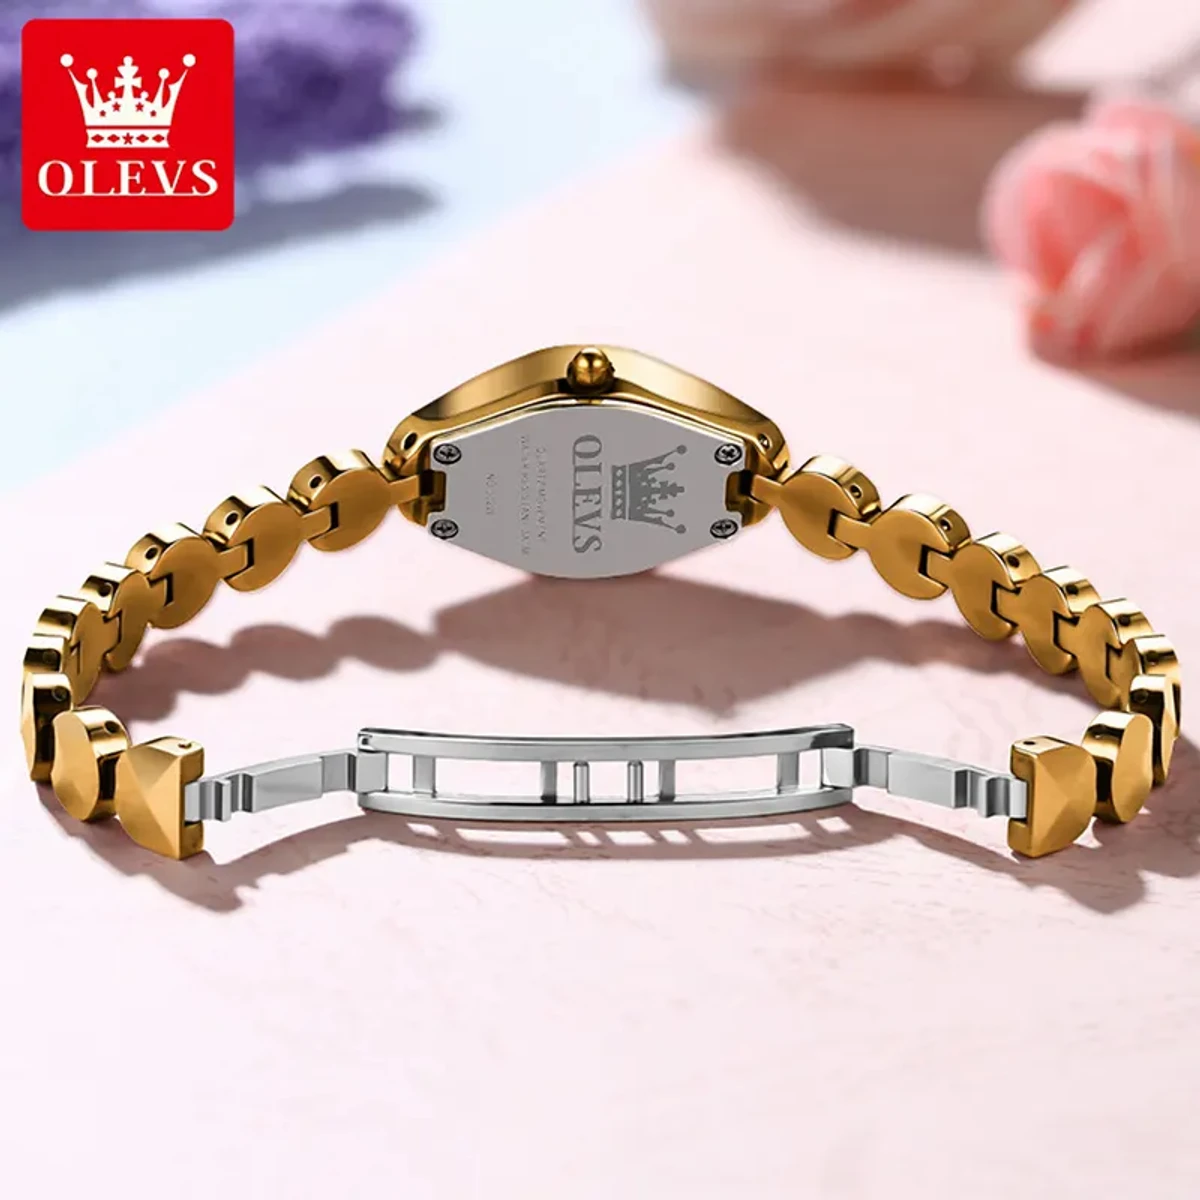 OLEVS Women 7007 Elegant Analog Diamond Watches For Women - OLEVS MODEL 7007 Rose golden Cooler Watch